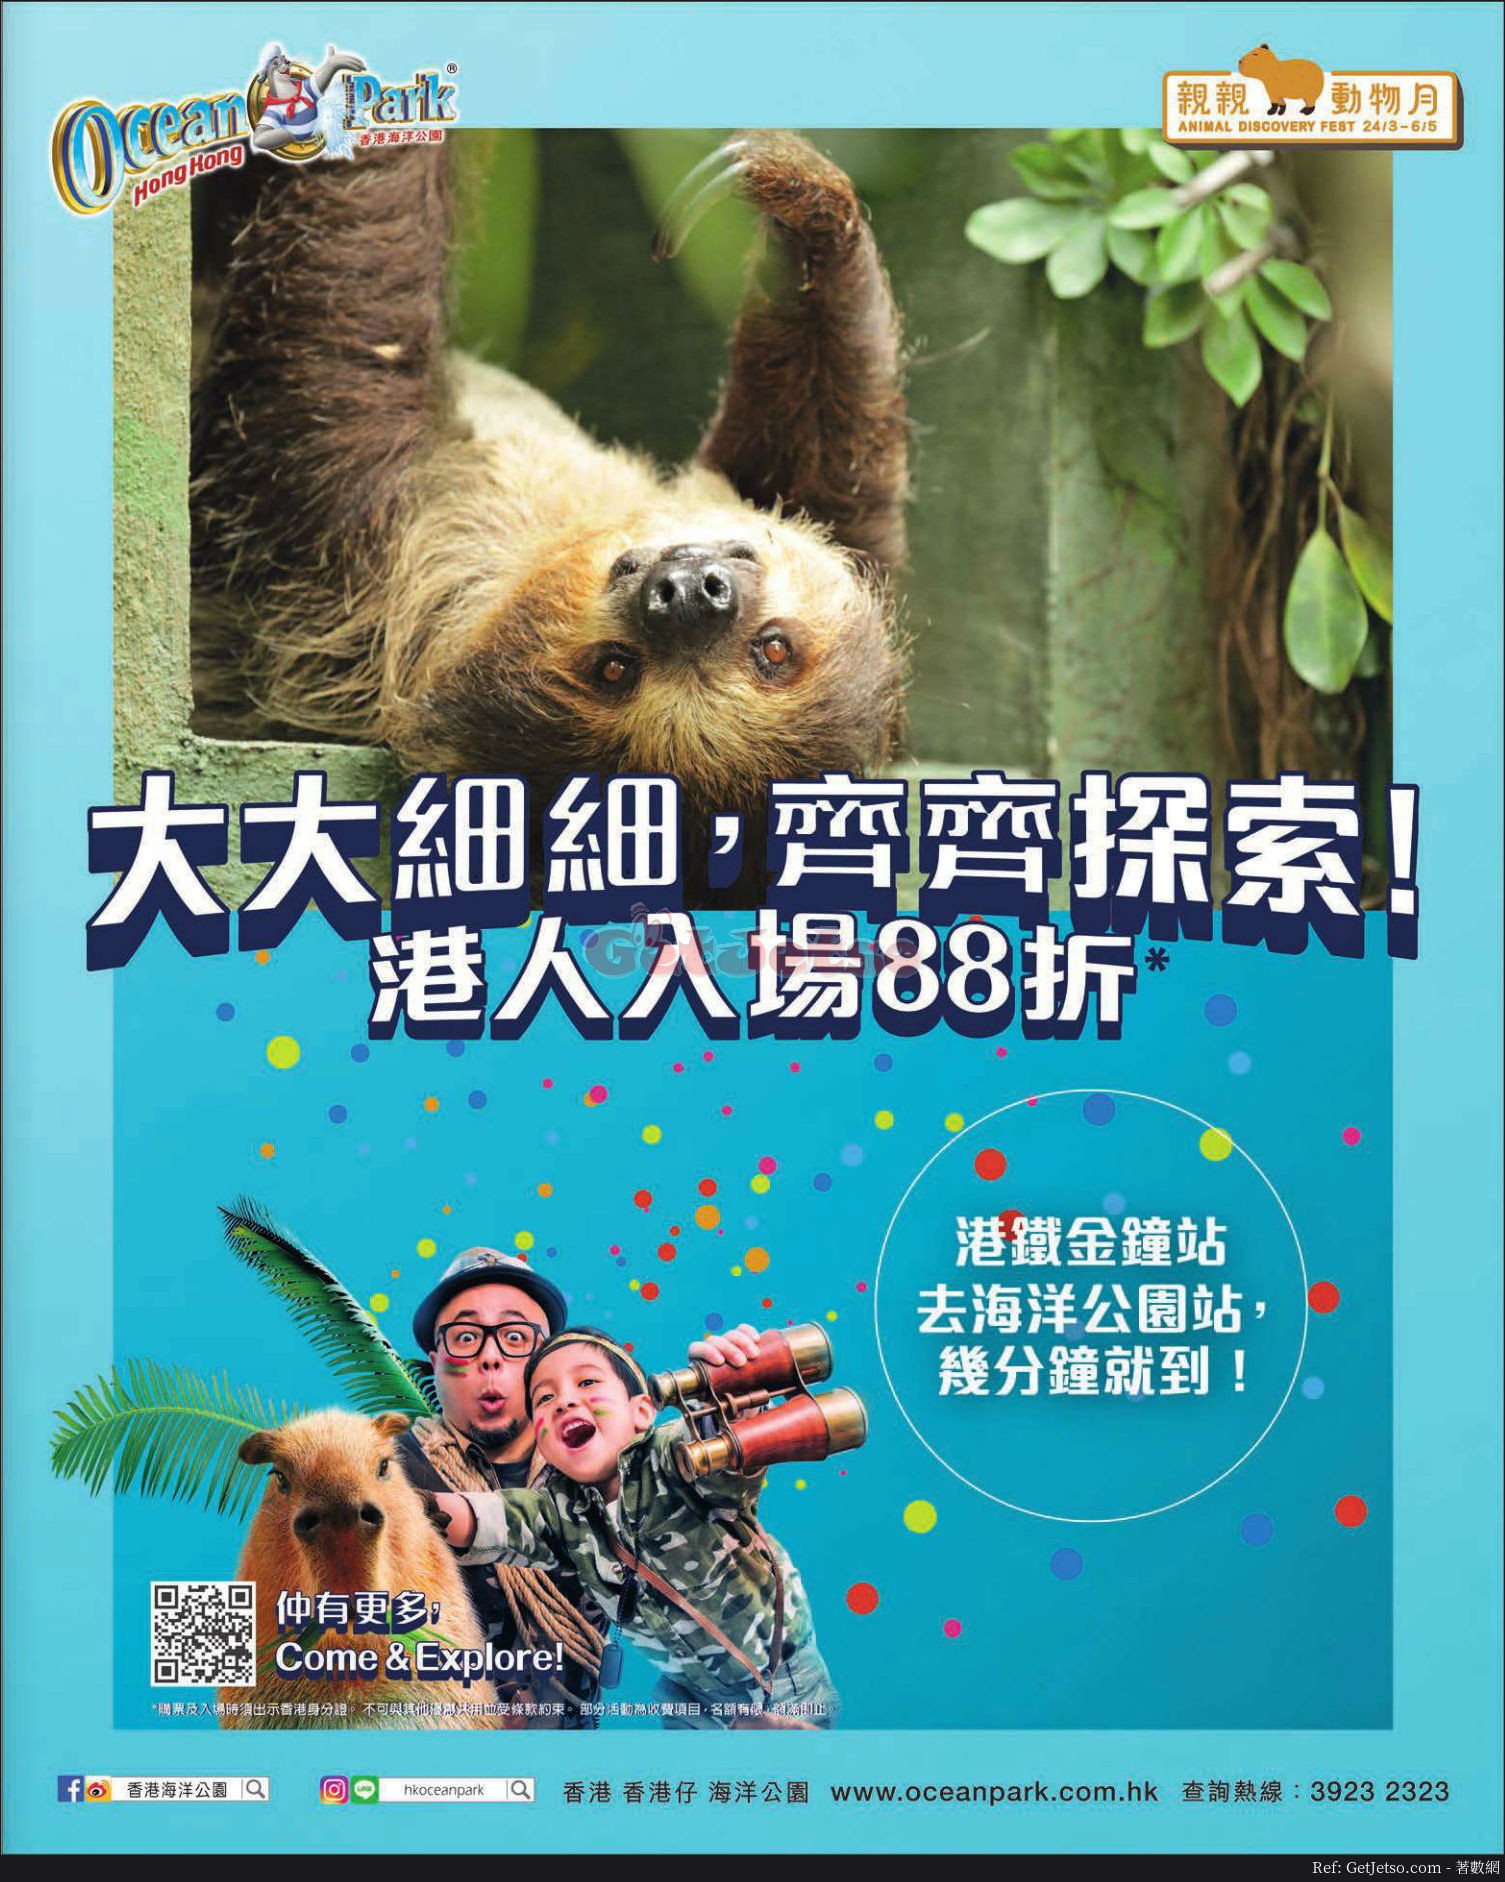 海洋公園香港居民88折門票優惠、親親動物月(至18年5月6日)圖片2